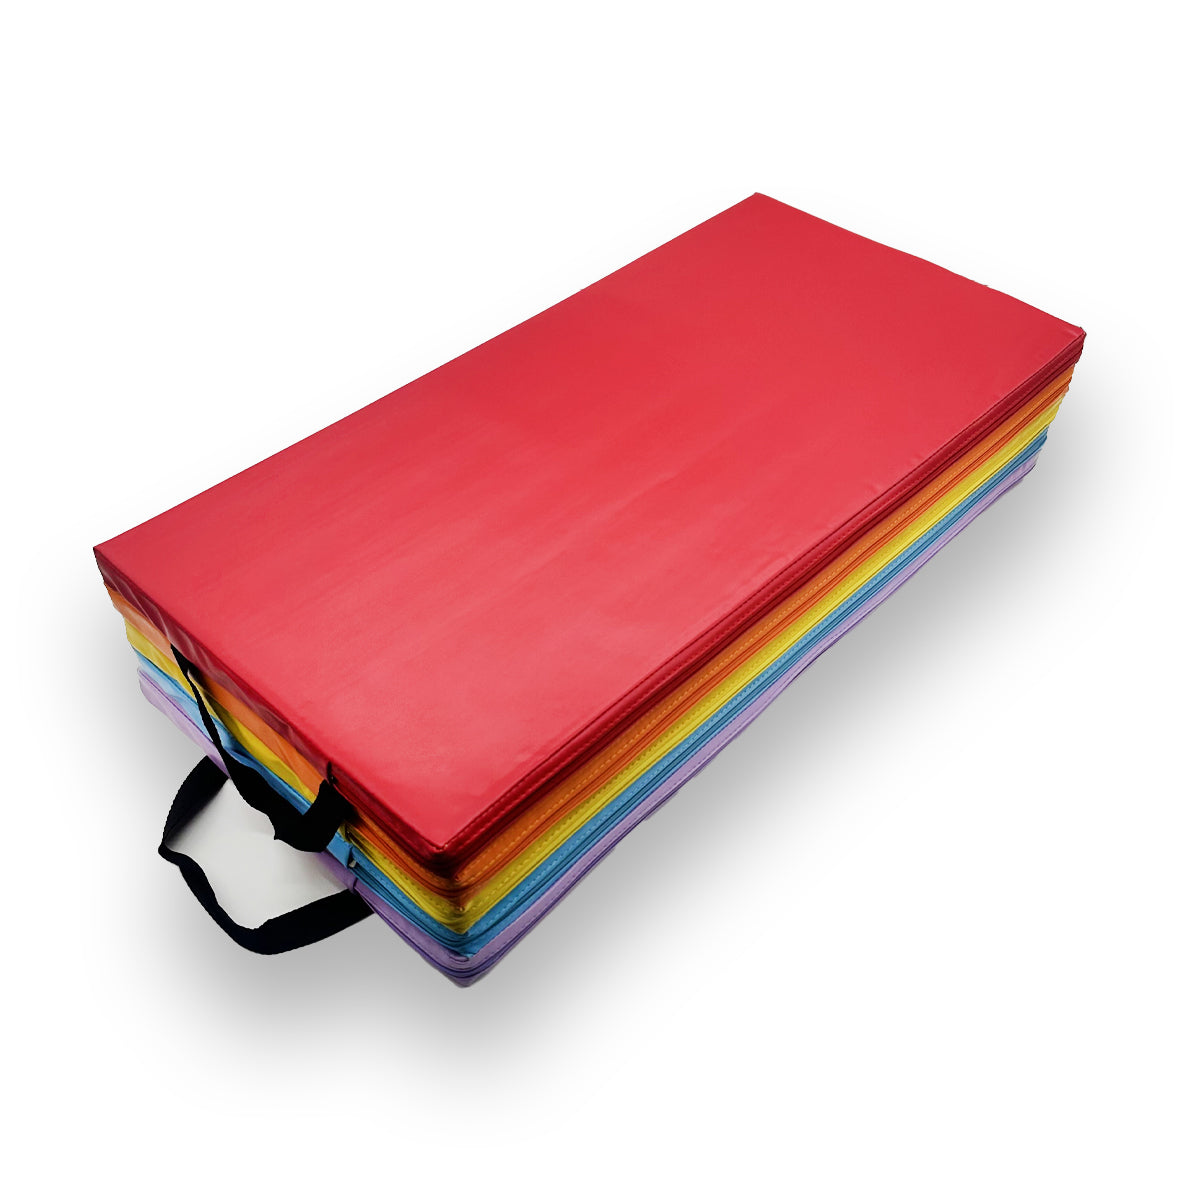 Nicoman Foldable Home Gymnastic Mat